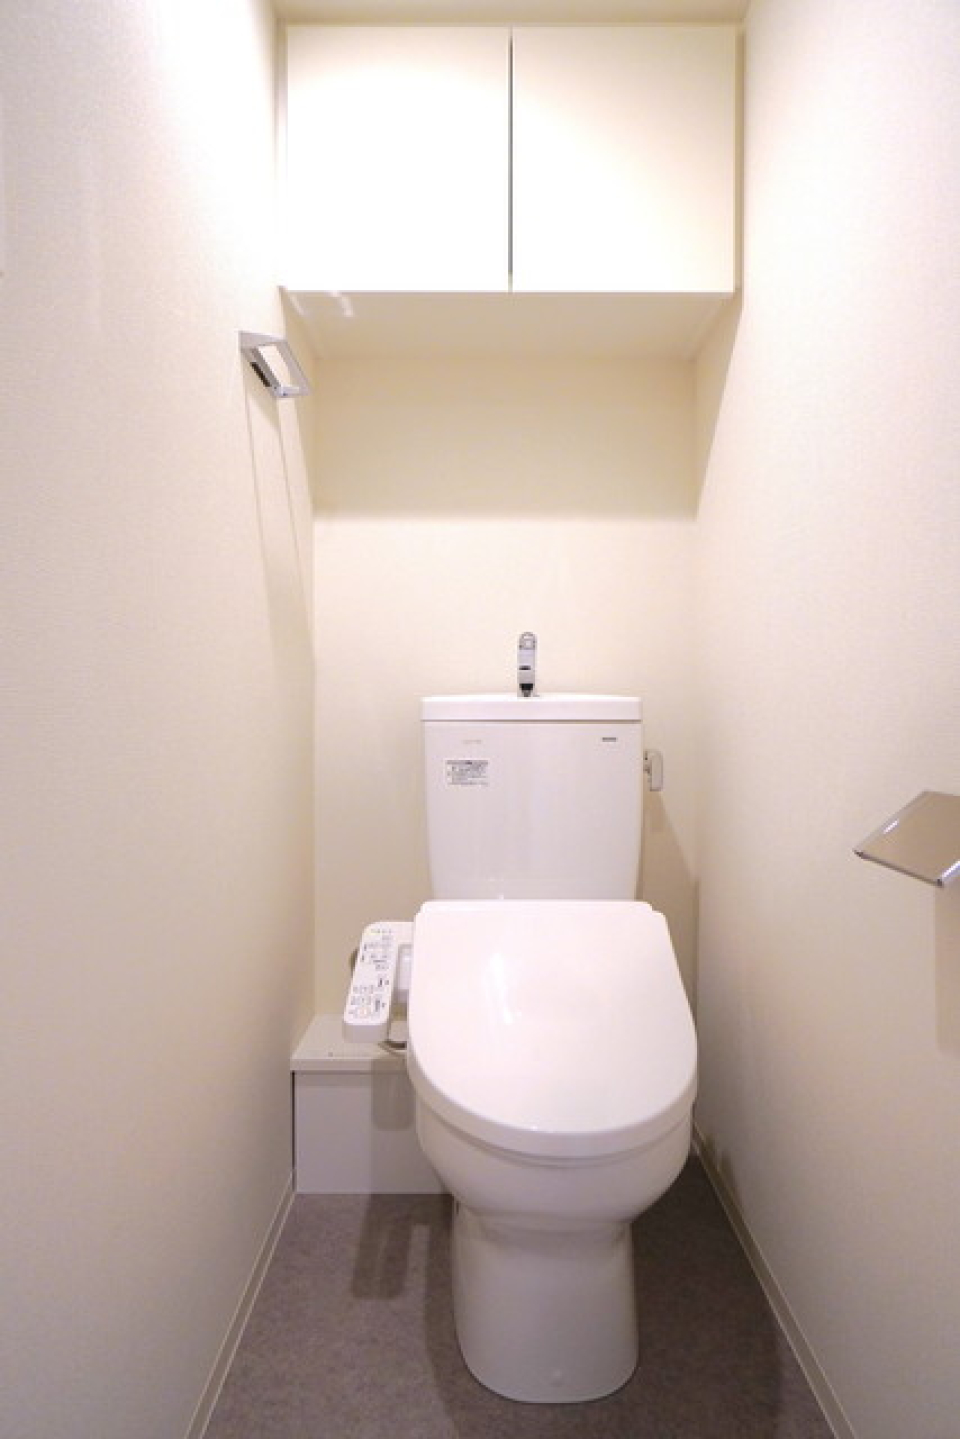 棚の付いた、清潔感のあるトイレ。
※写真は同タイプ住戸です。